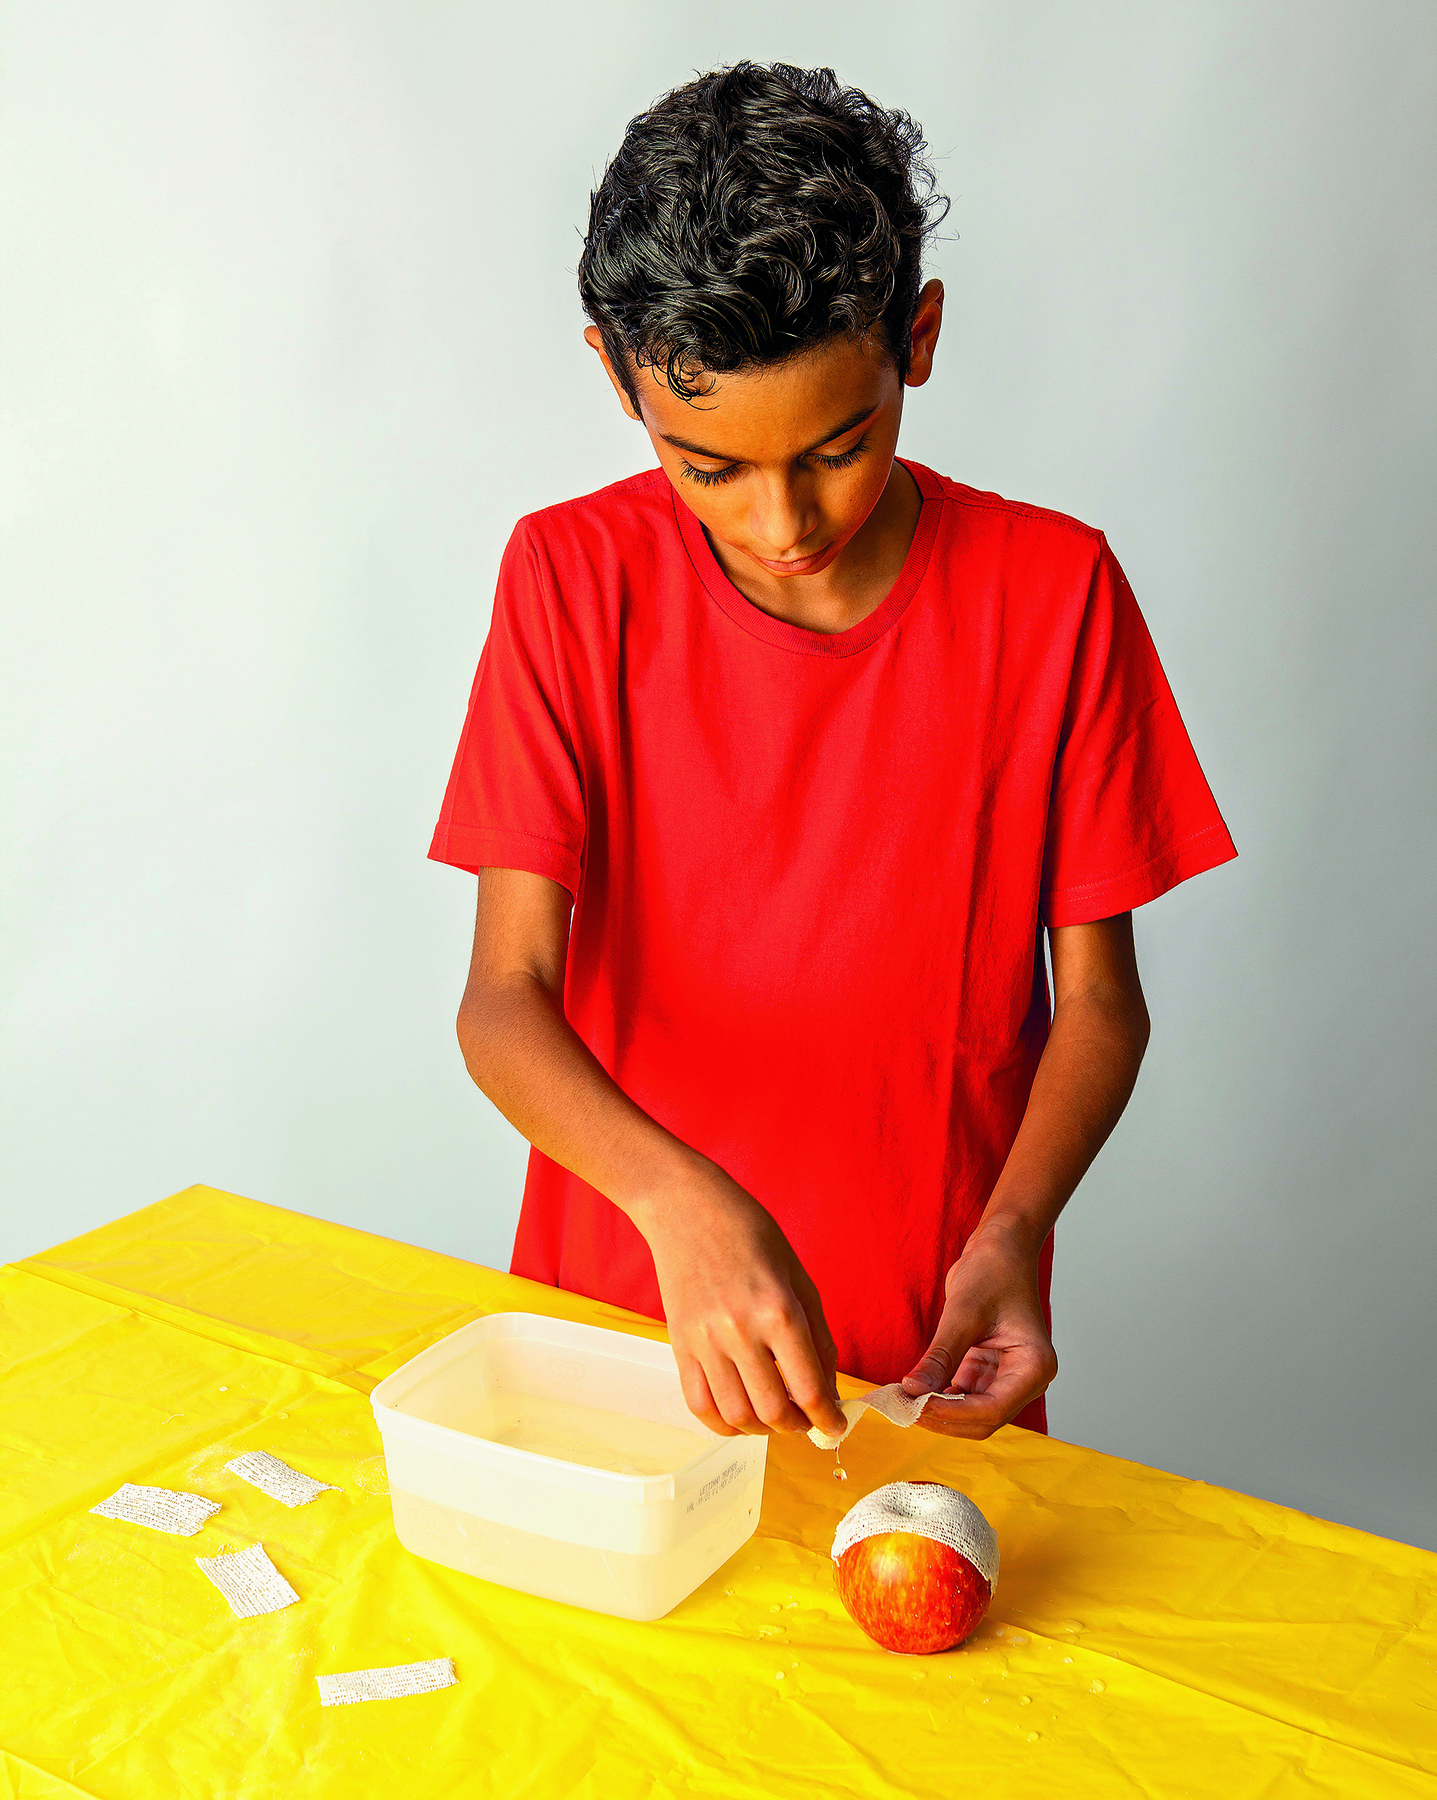 Fotografia. Menino adolescente de cabelo preto, vestindo camiseta vermelha. Com as duas mãos, ele aplica ataduras molhadas em uma  maçã sobre uma mesa coberta por uma toalha amarela, onde há um pote com água e algumas ataduras espalhadas.